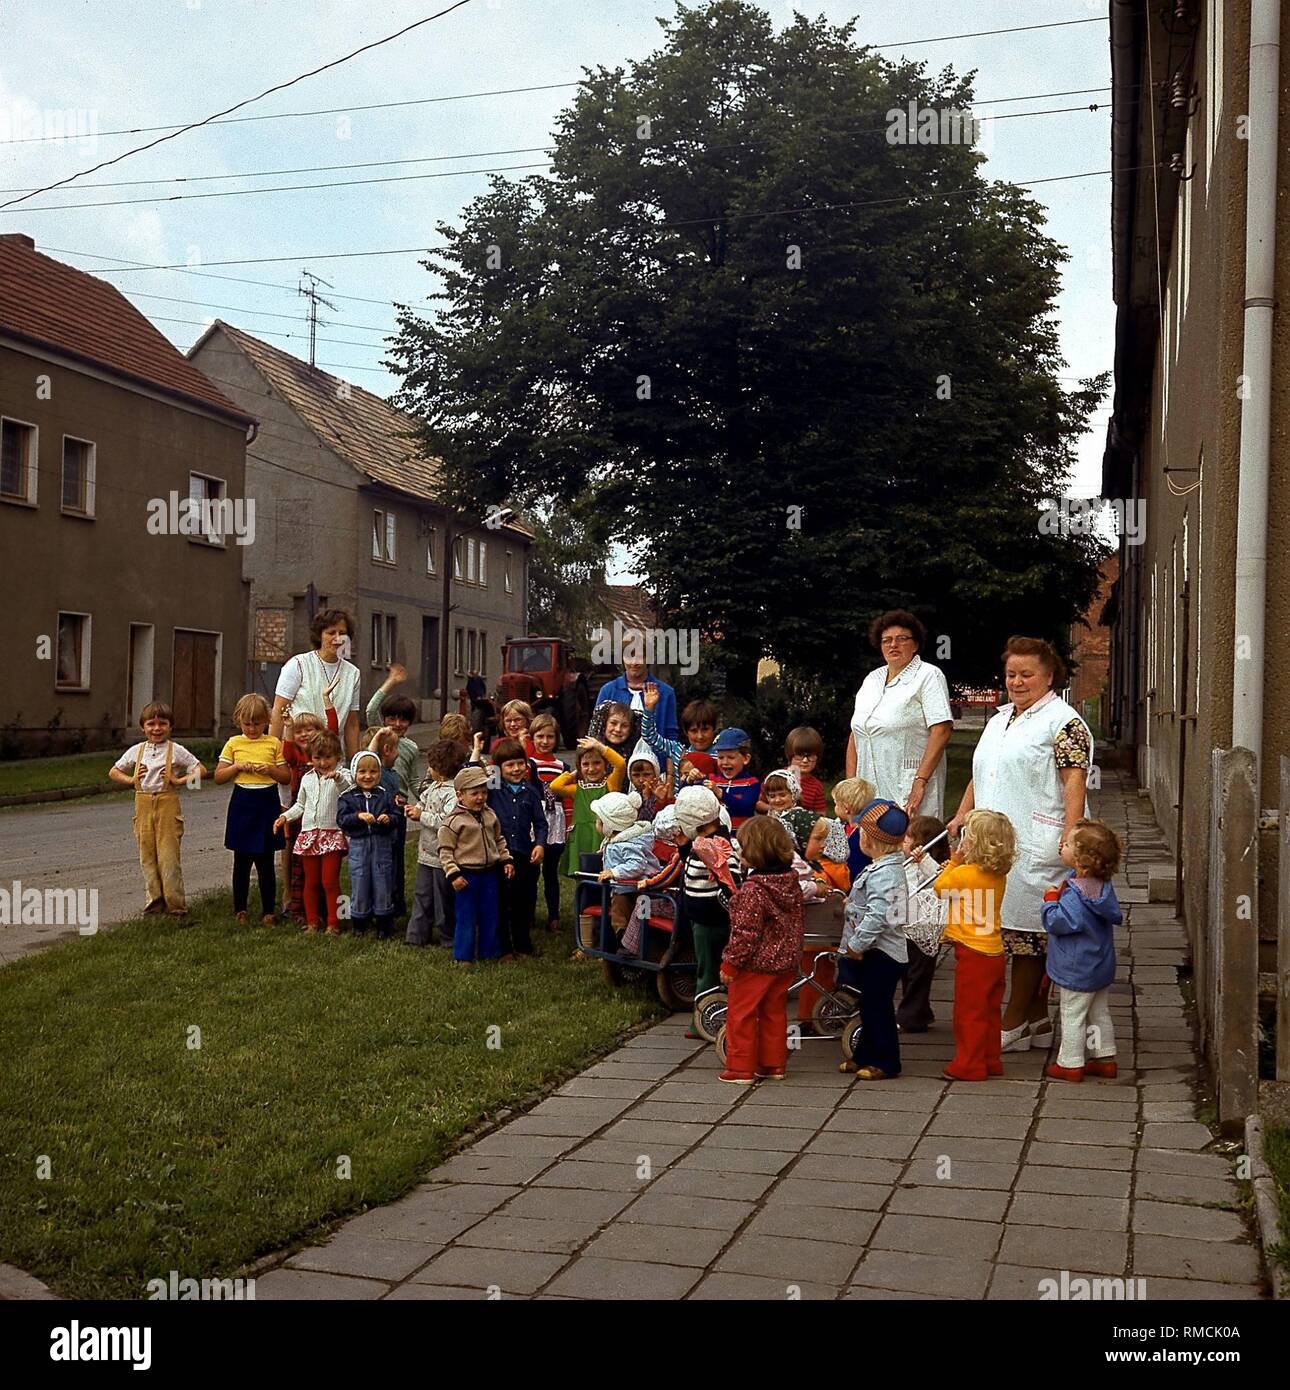 Kindergarten in Berlstedt in der Nähe von Weimar Stockfotografie - Alamy